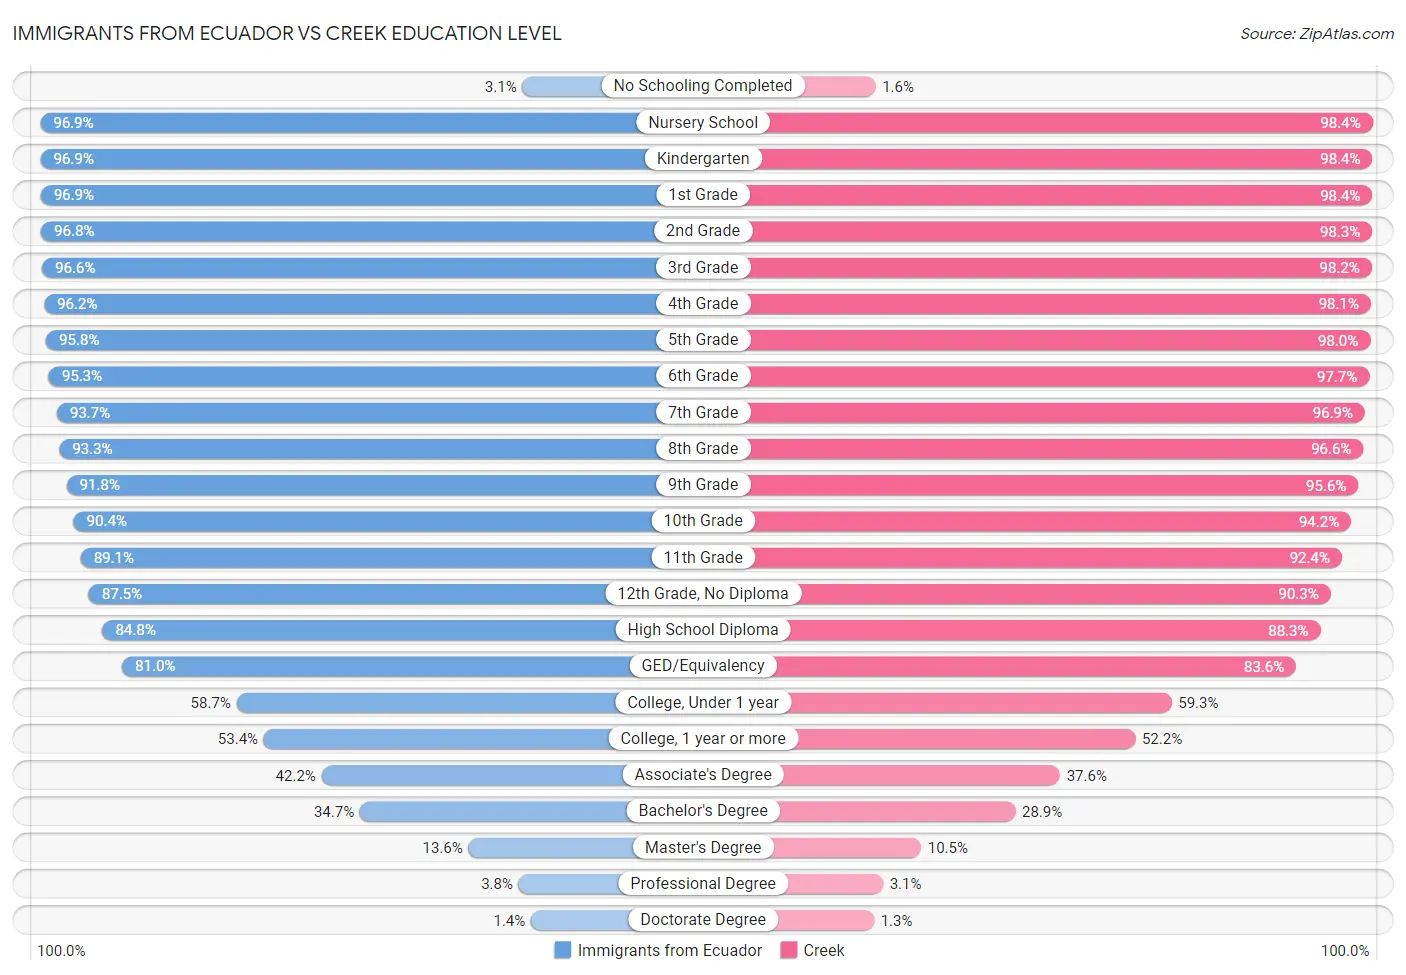 Immigrants from Ecuador vs Creek Education Level